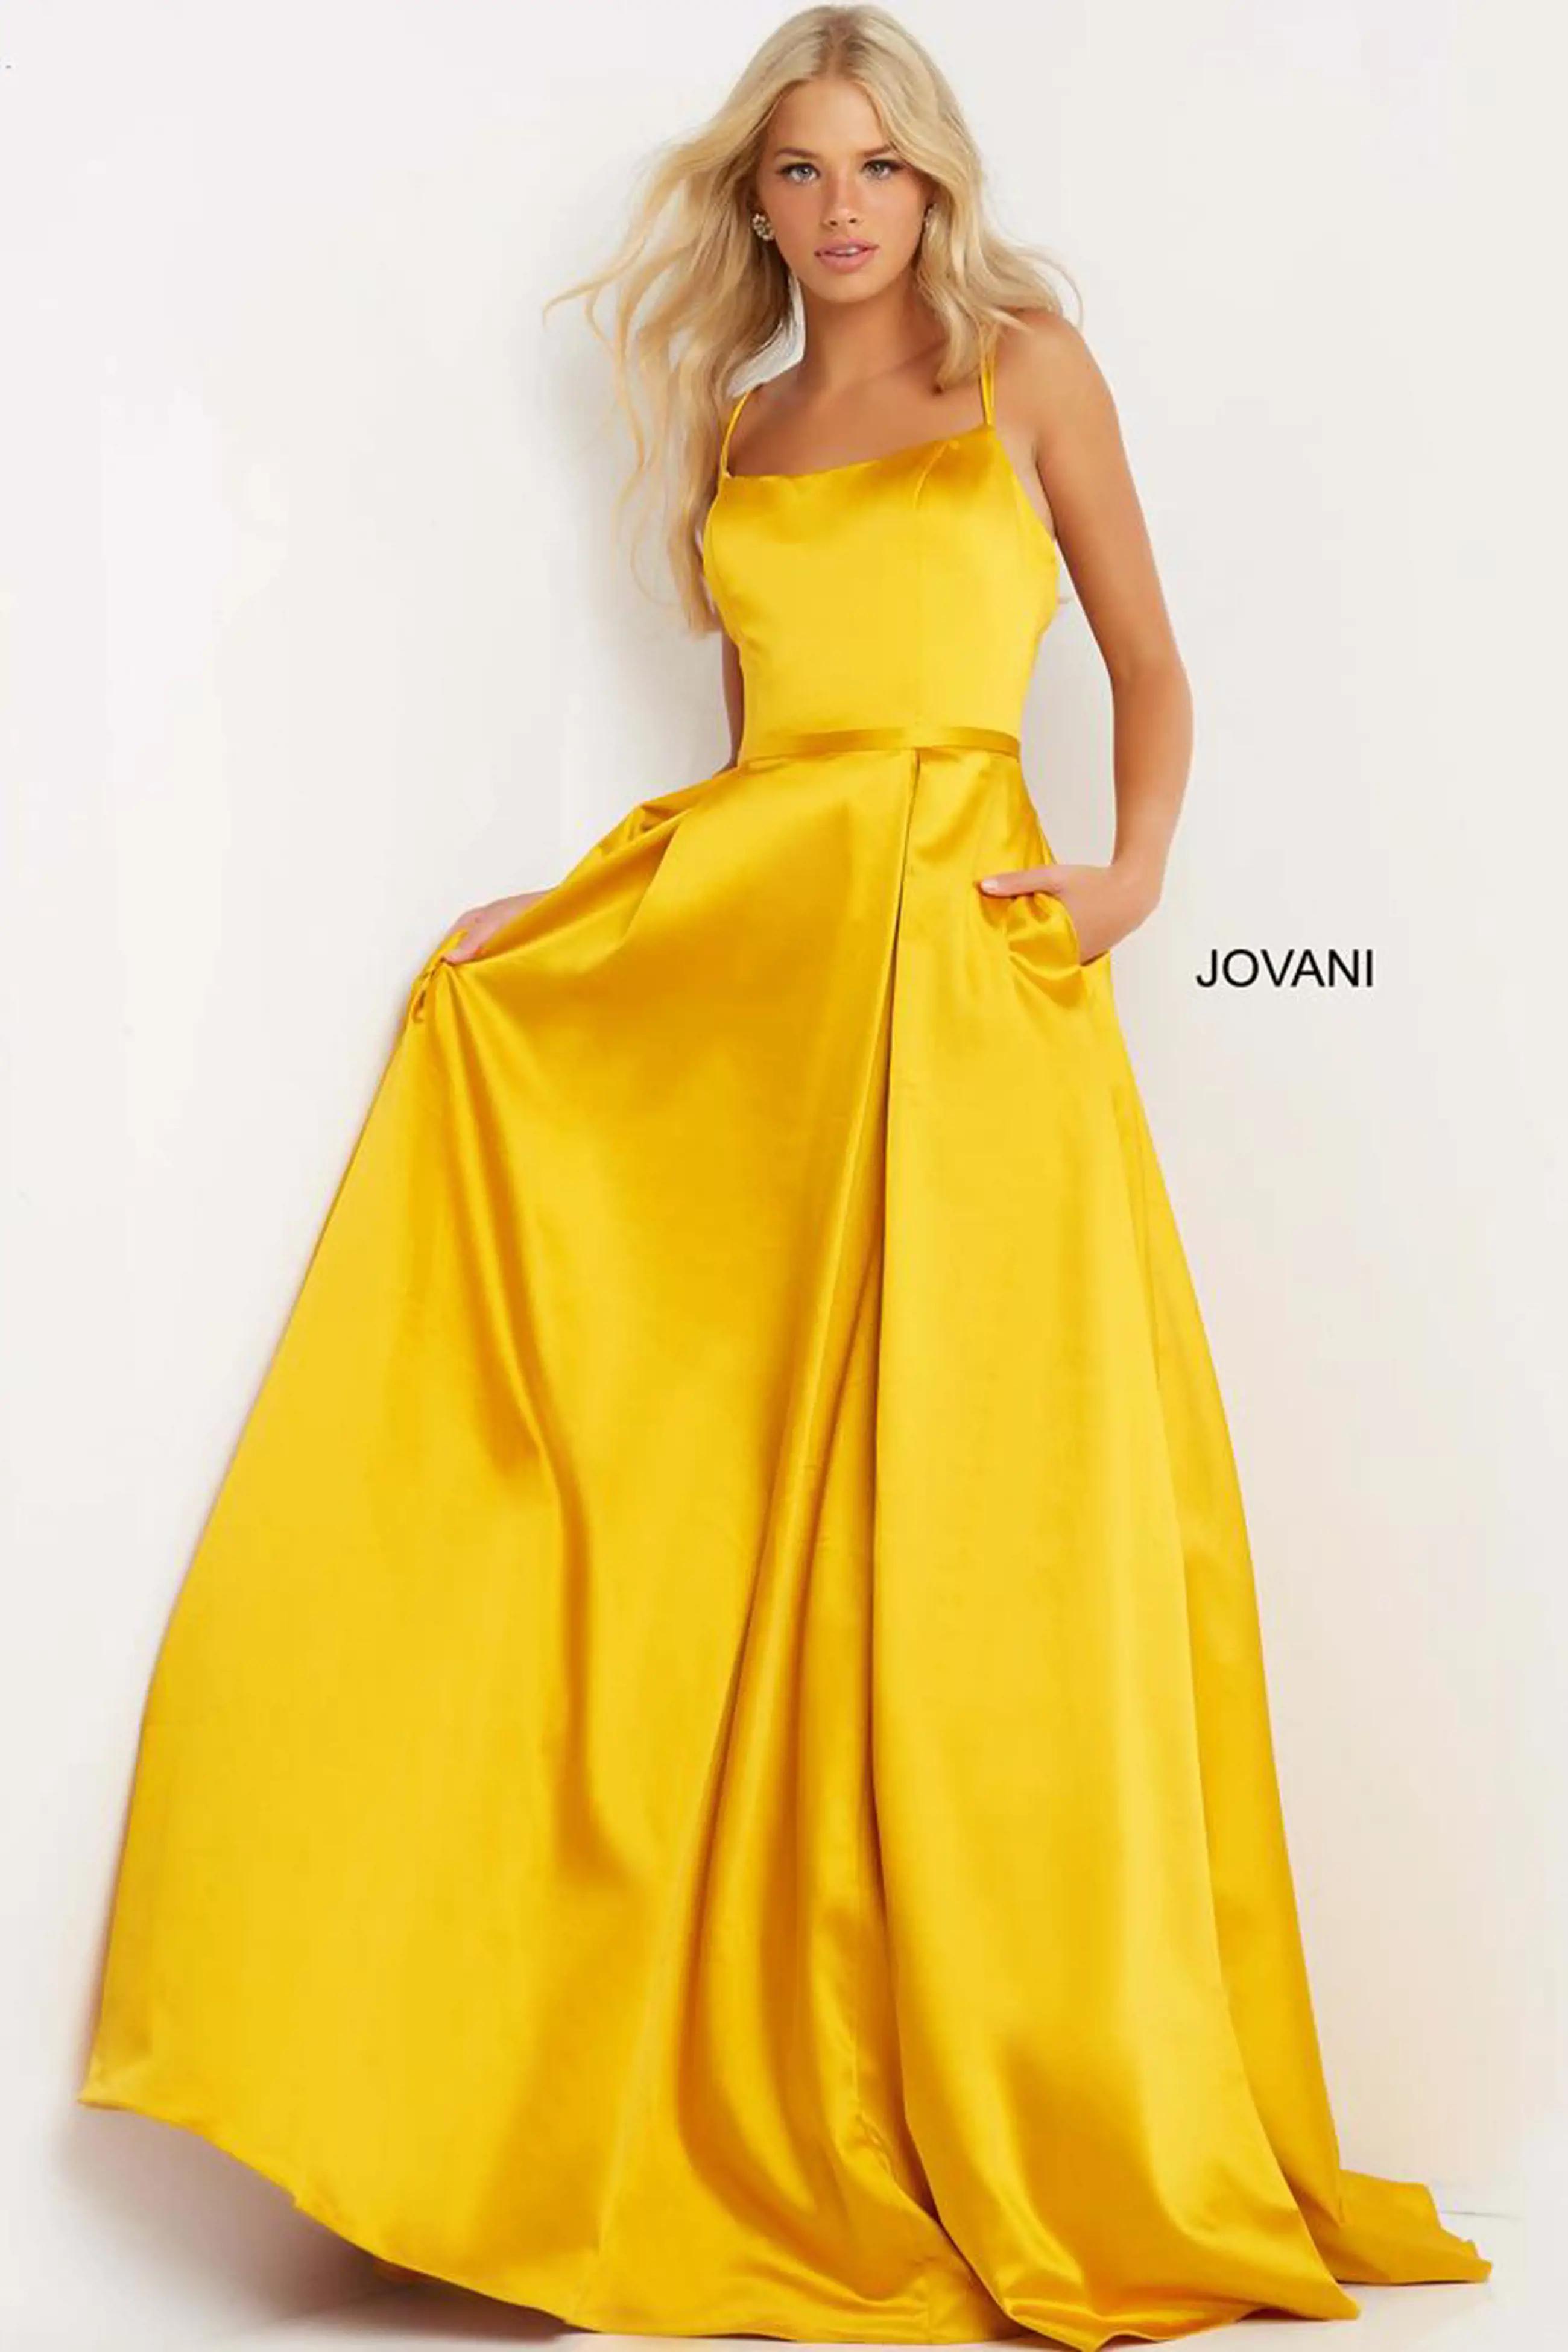 Model wearing a Jovani gown